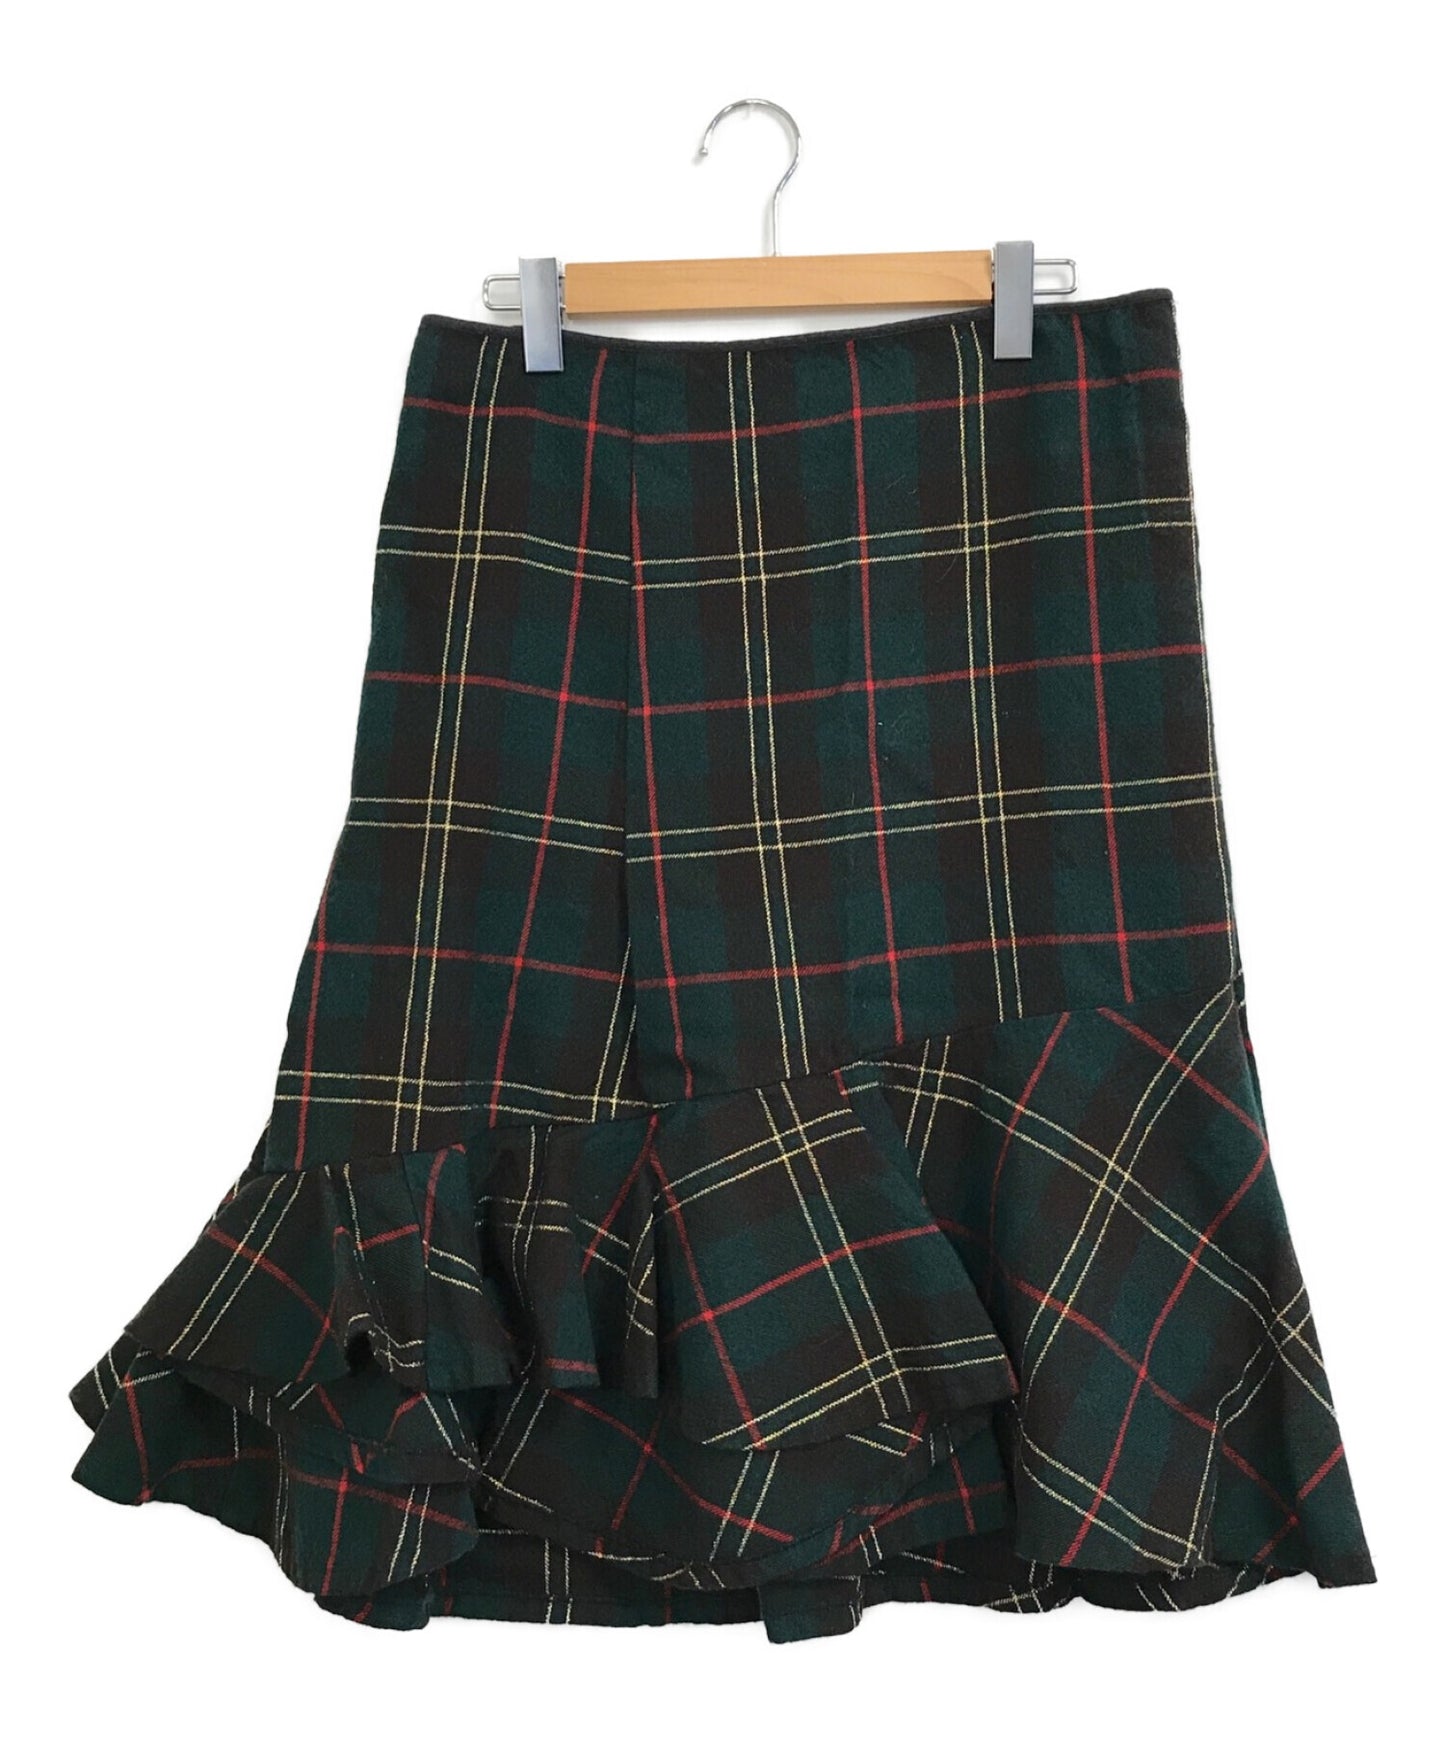 Comme des Garcons [Old] Shrunken Wool Lamé Check Skirt GS-04020M